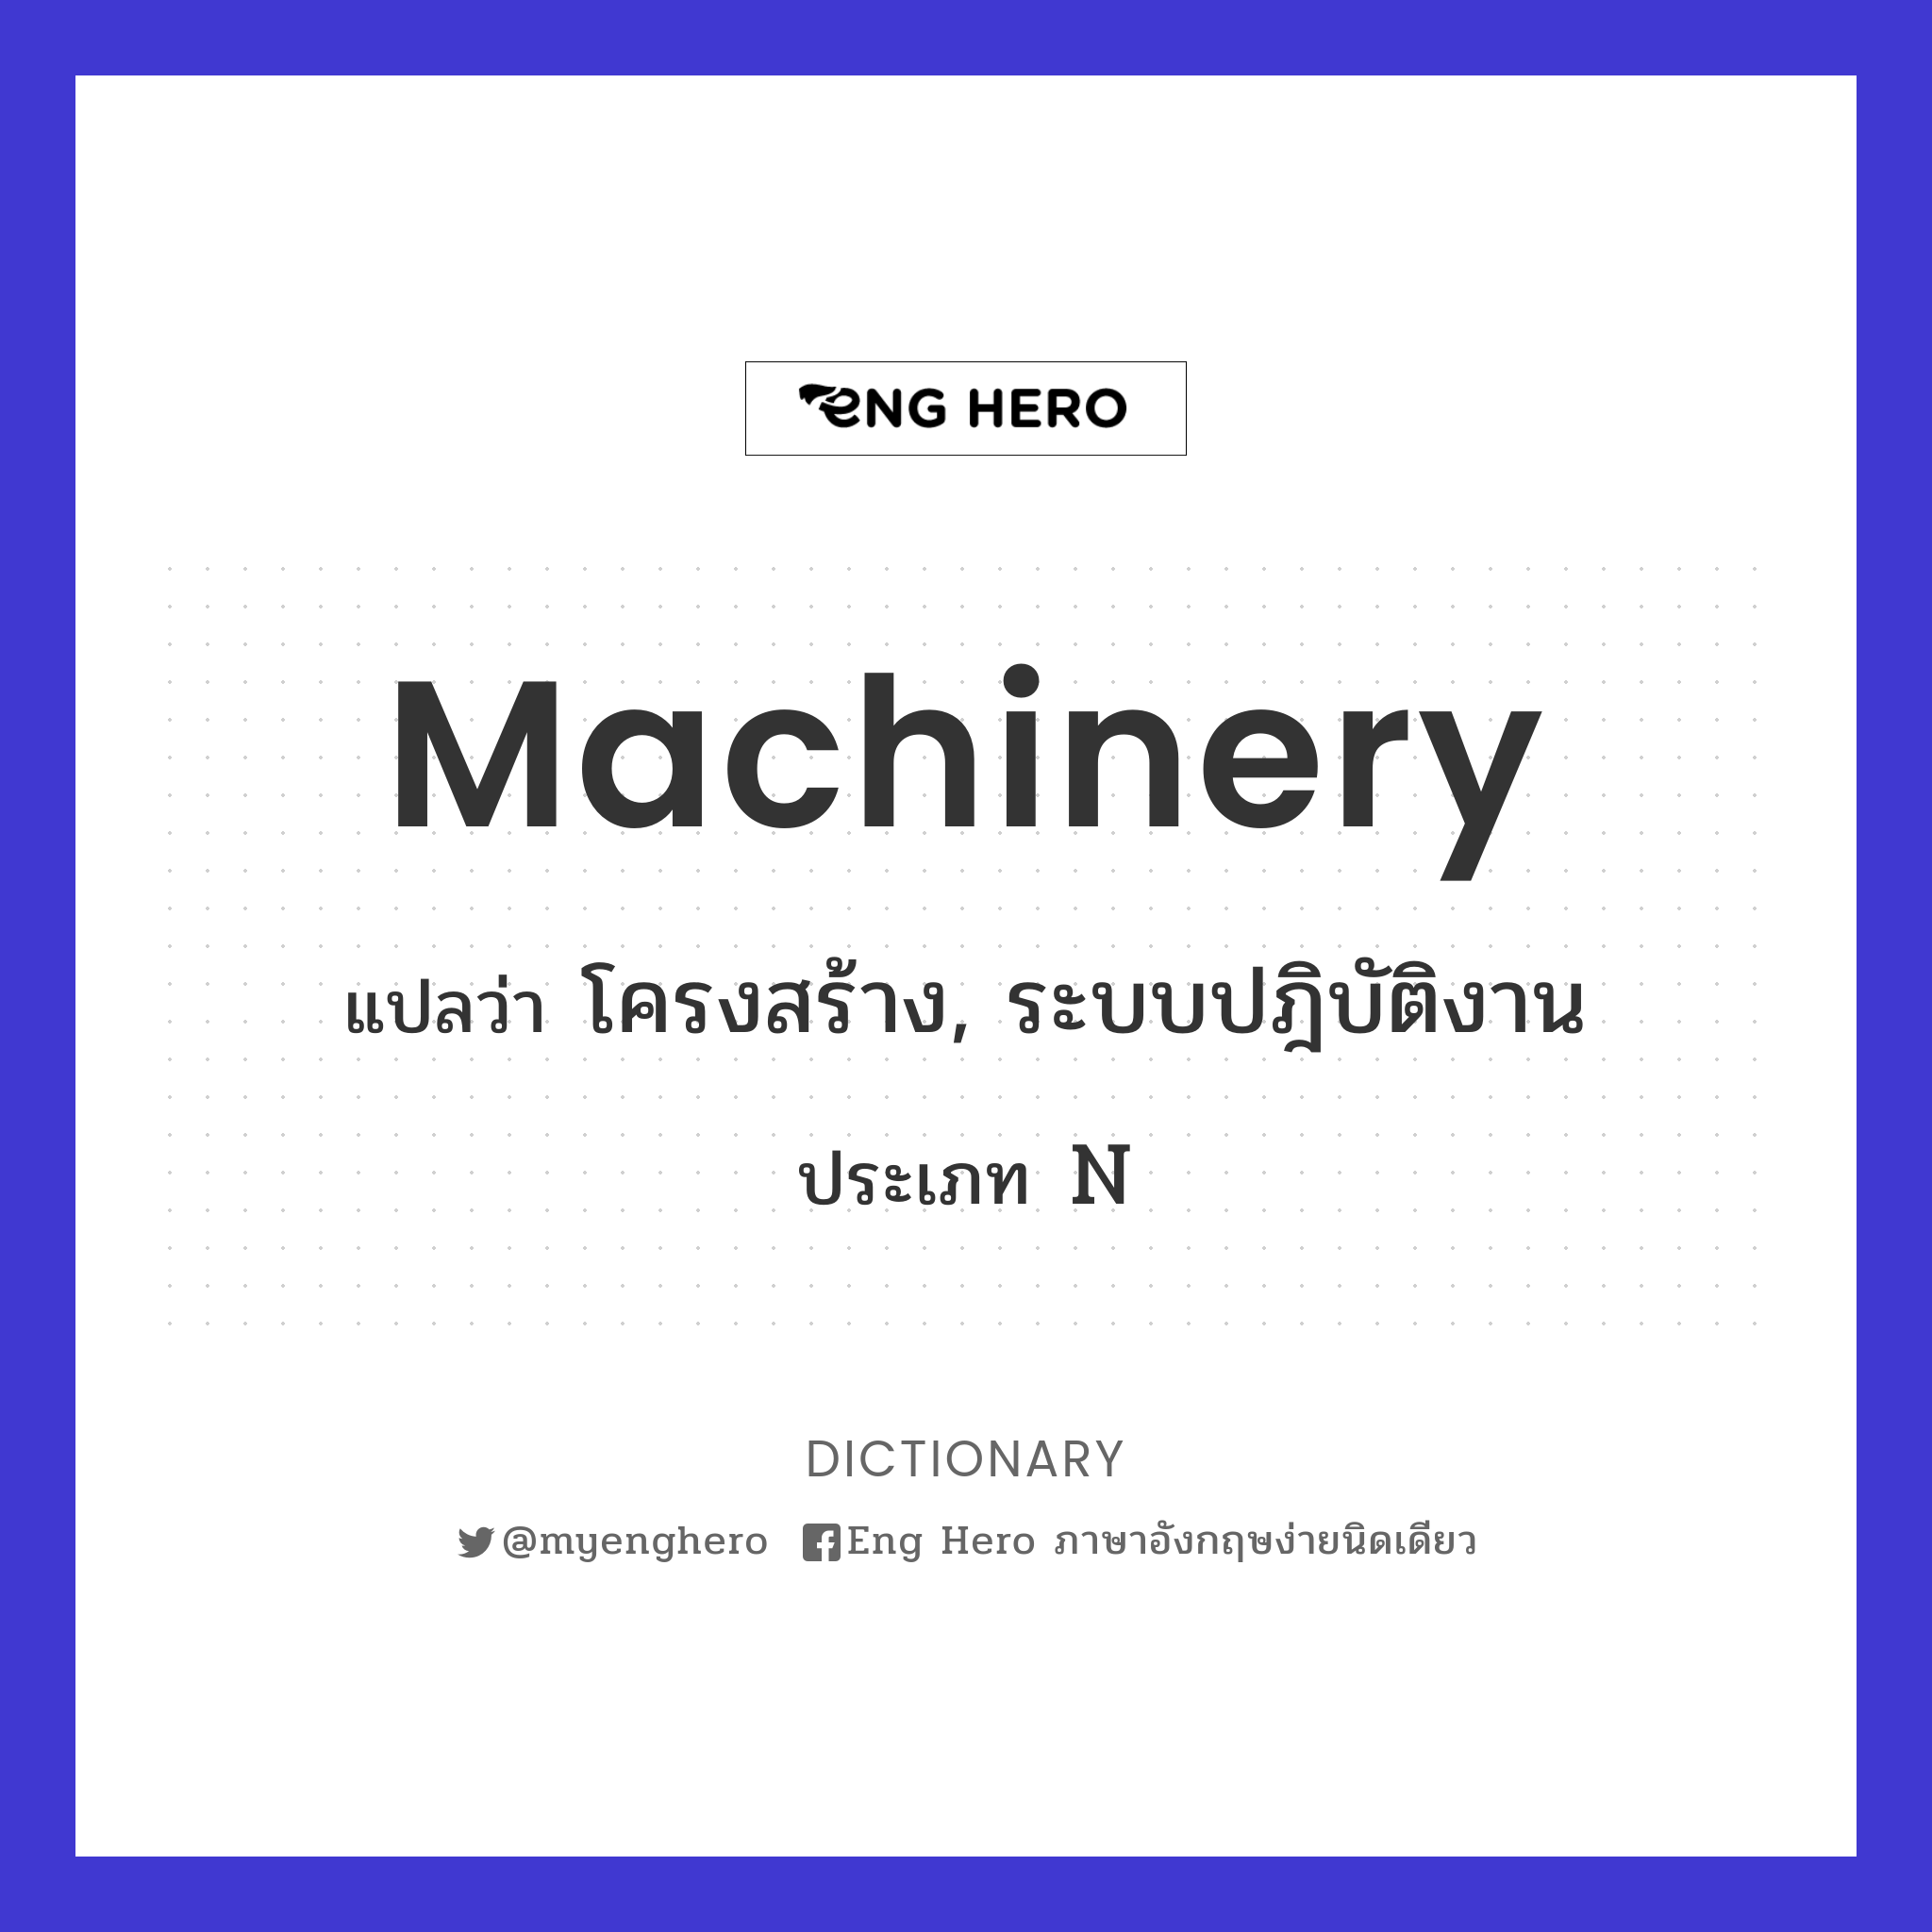 machinery